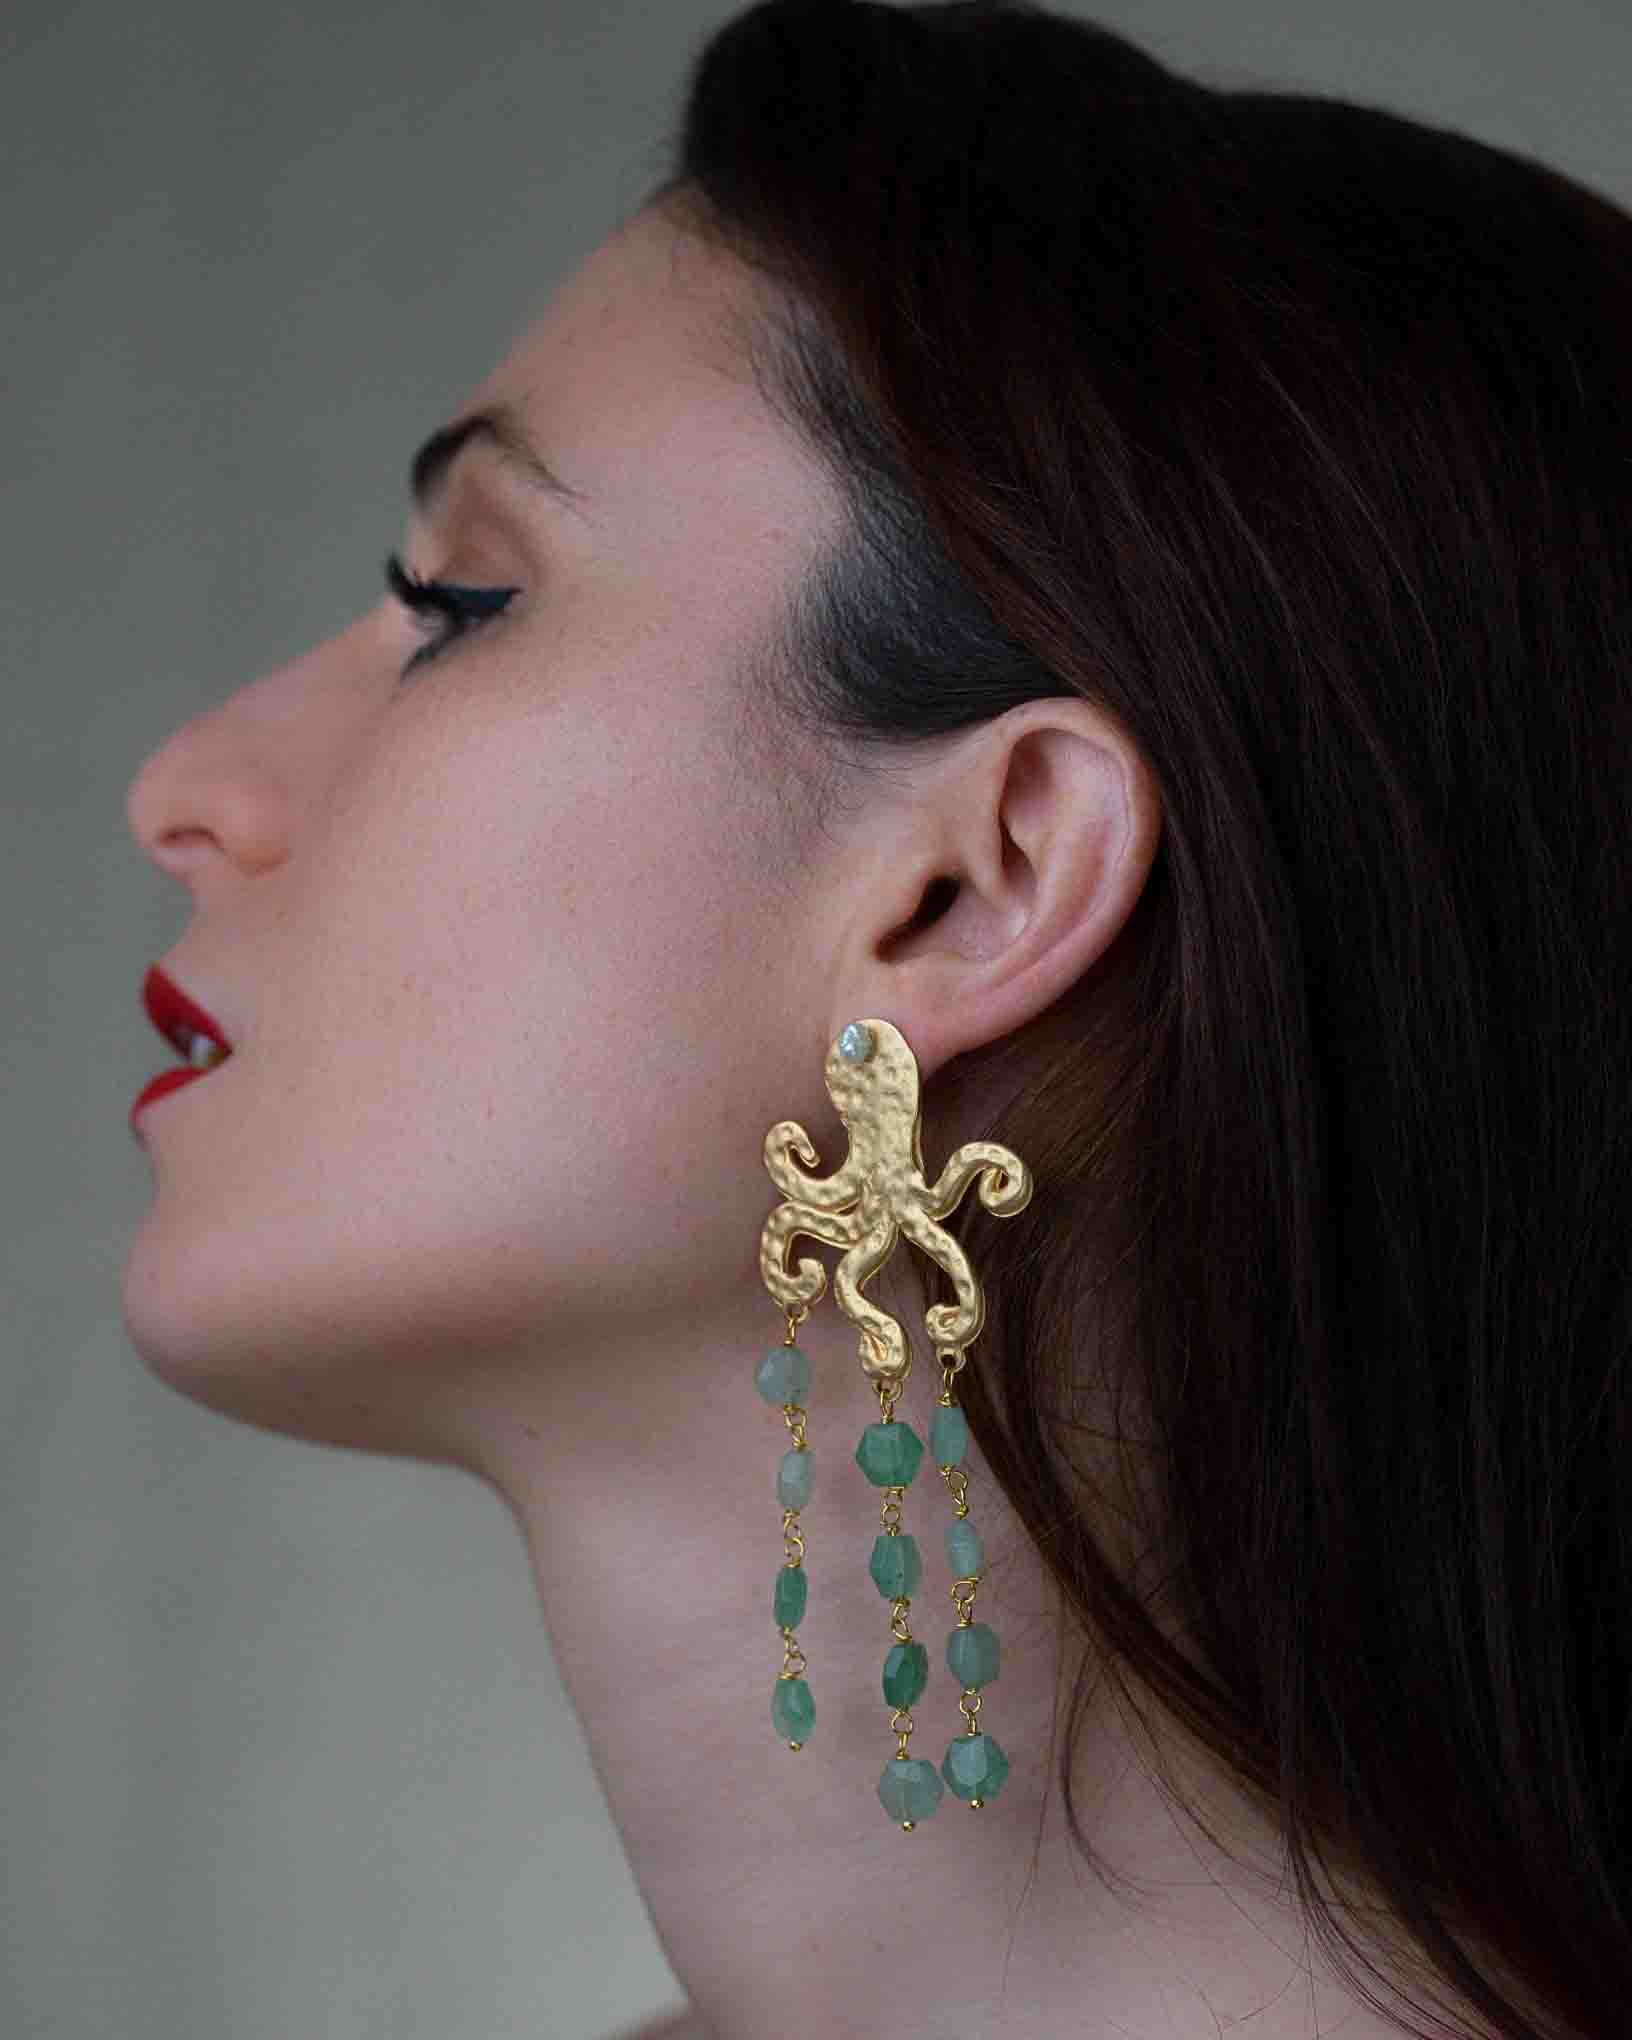 Ohrring Fritto Misto aus der Kollektion I Classici von Donna Rachele Jewelry